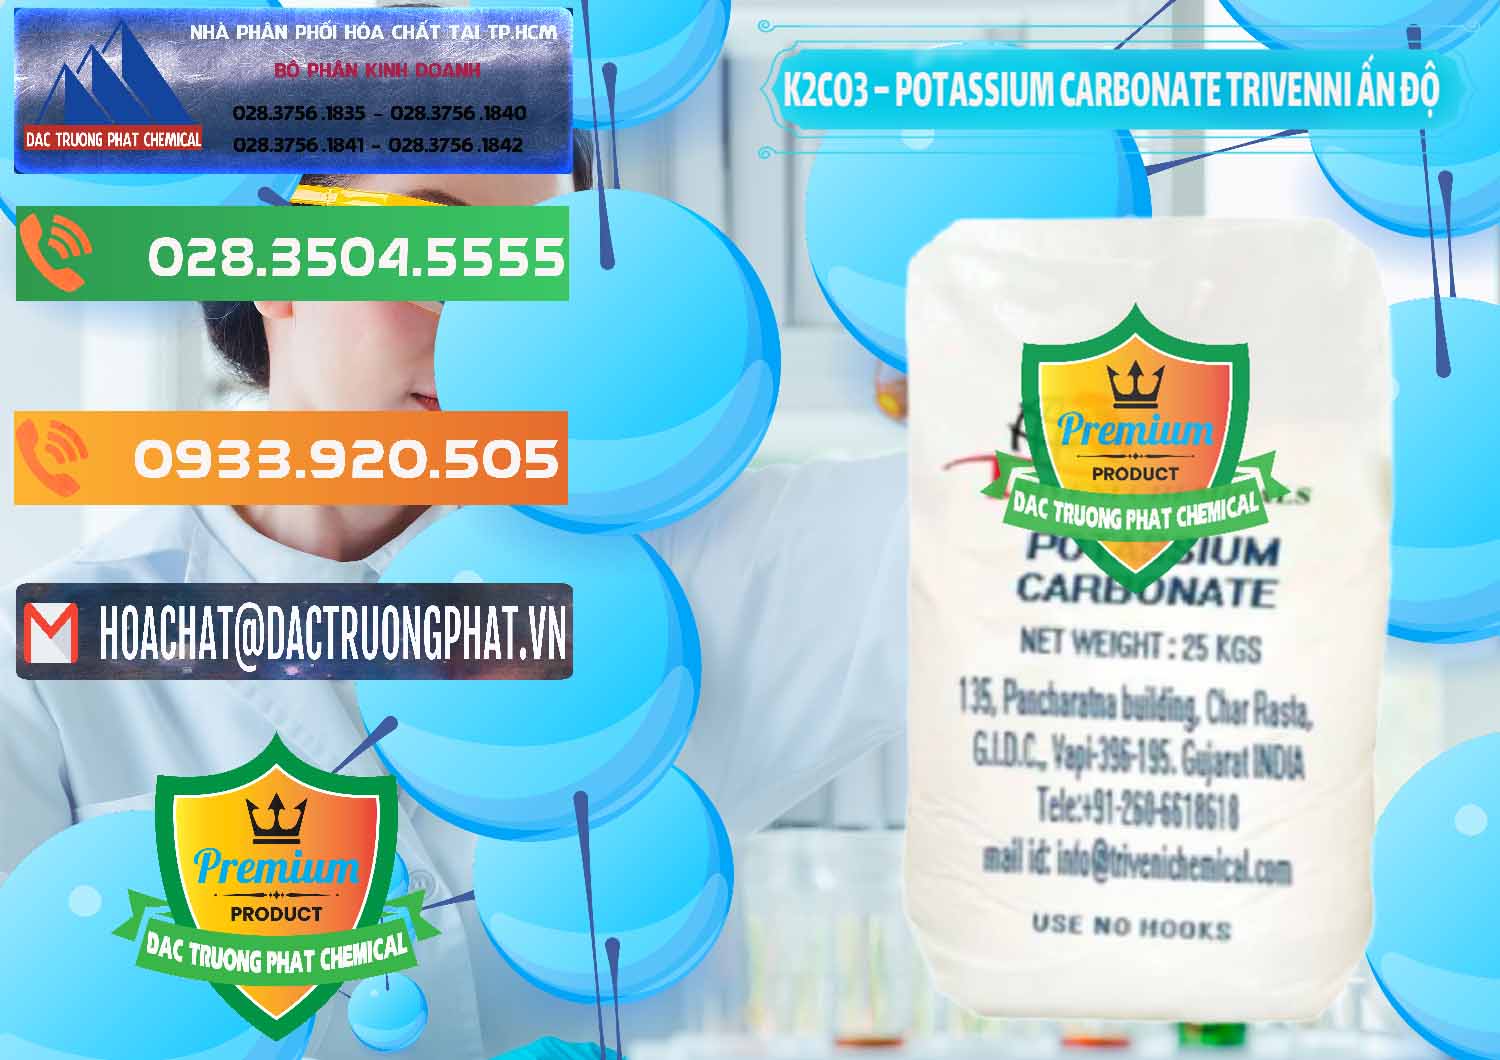 Cty chuyên bán _ cung cấp K2Co3 – Potassium Carbonate Trivenni Ấn Độ India - 0473 - Công ty chuyên cung ứng ( phân phối ) hóa chất tại TP.HCM - hoachatxulynuoc.com.vn